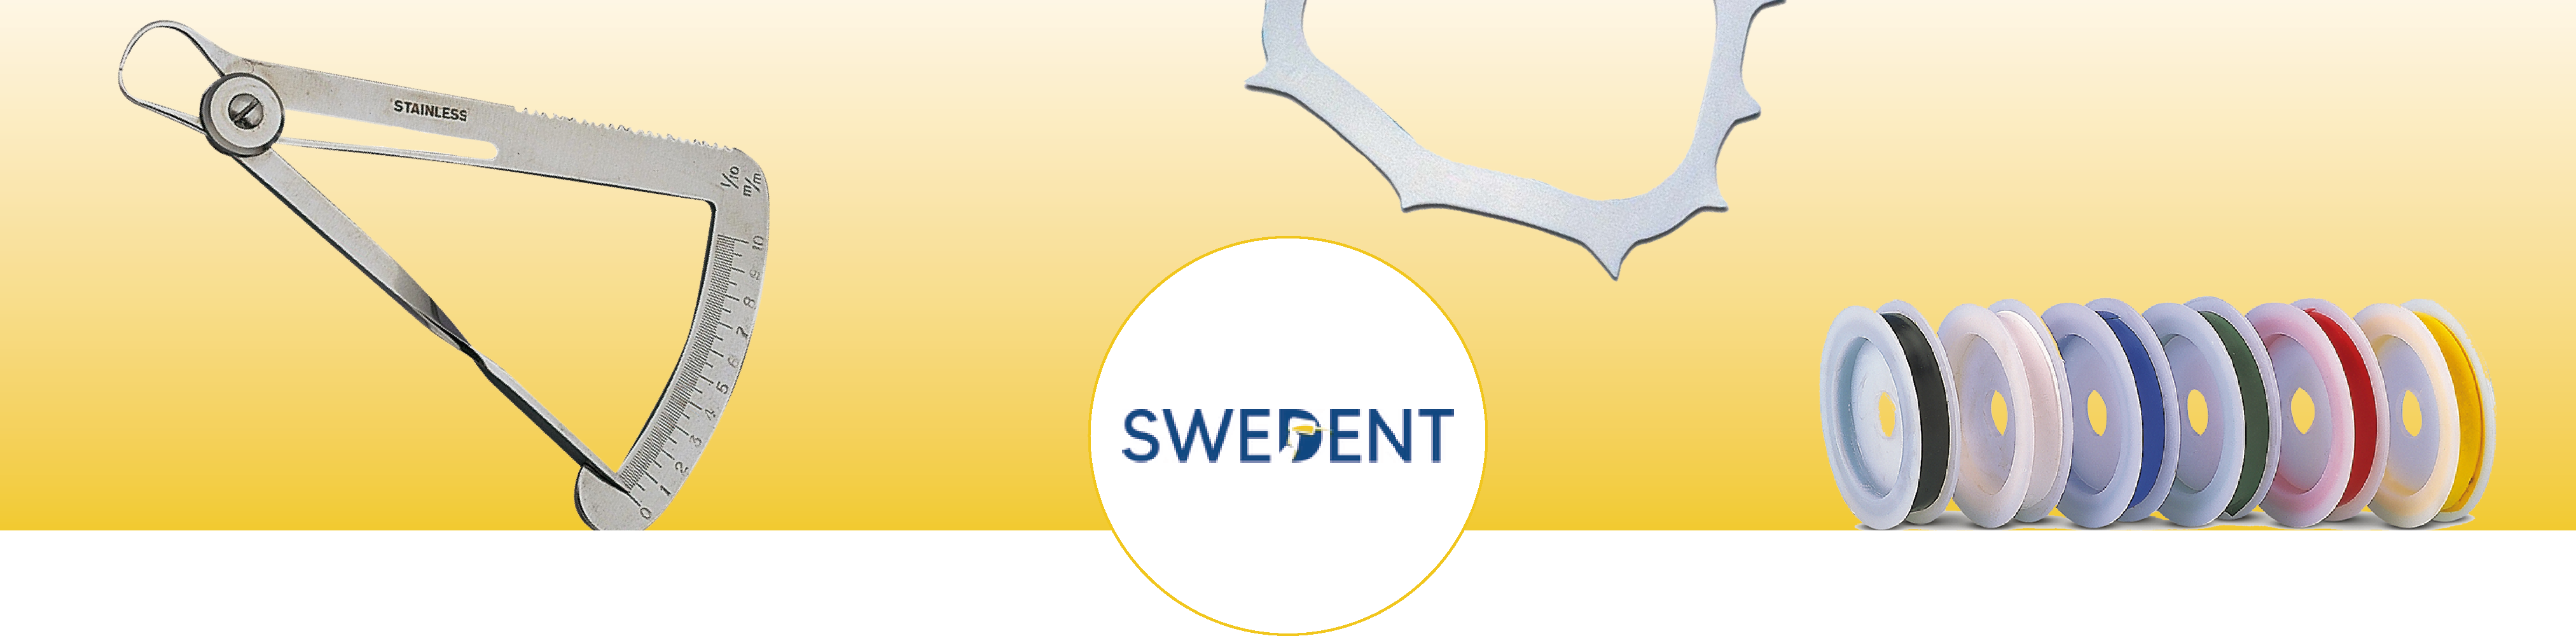 banner_swedent